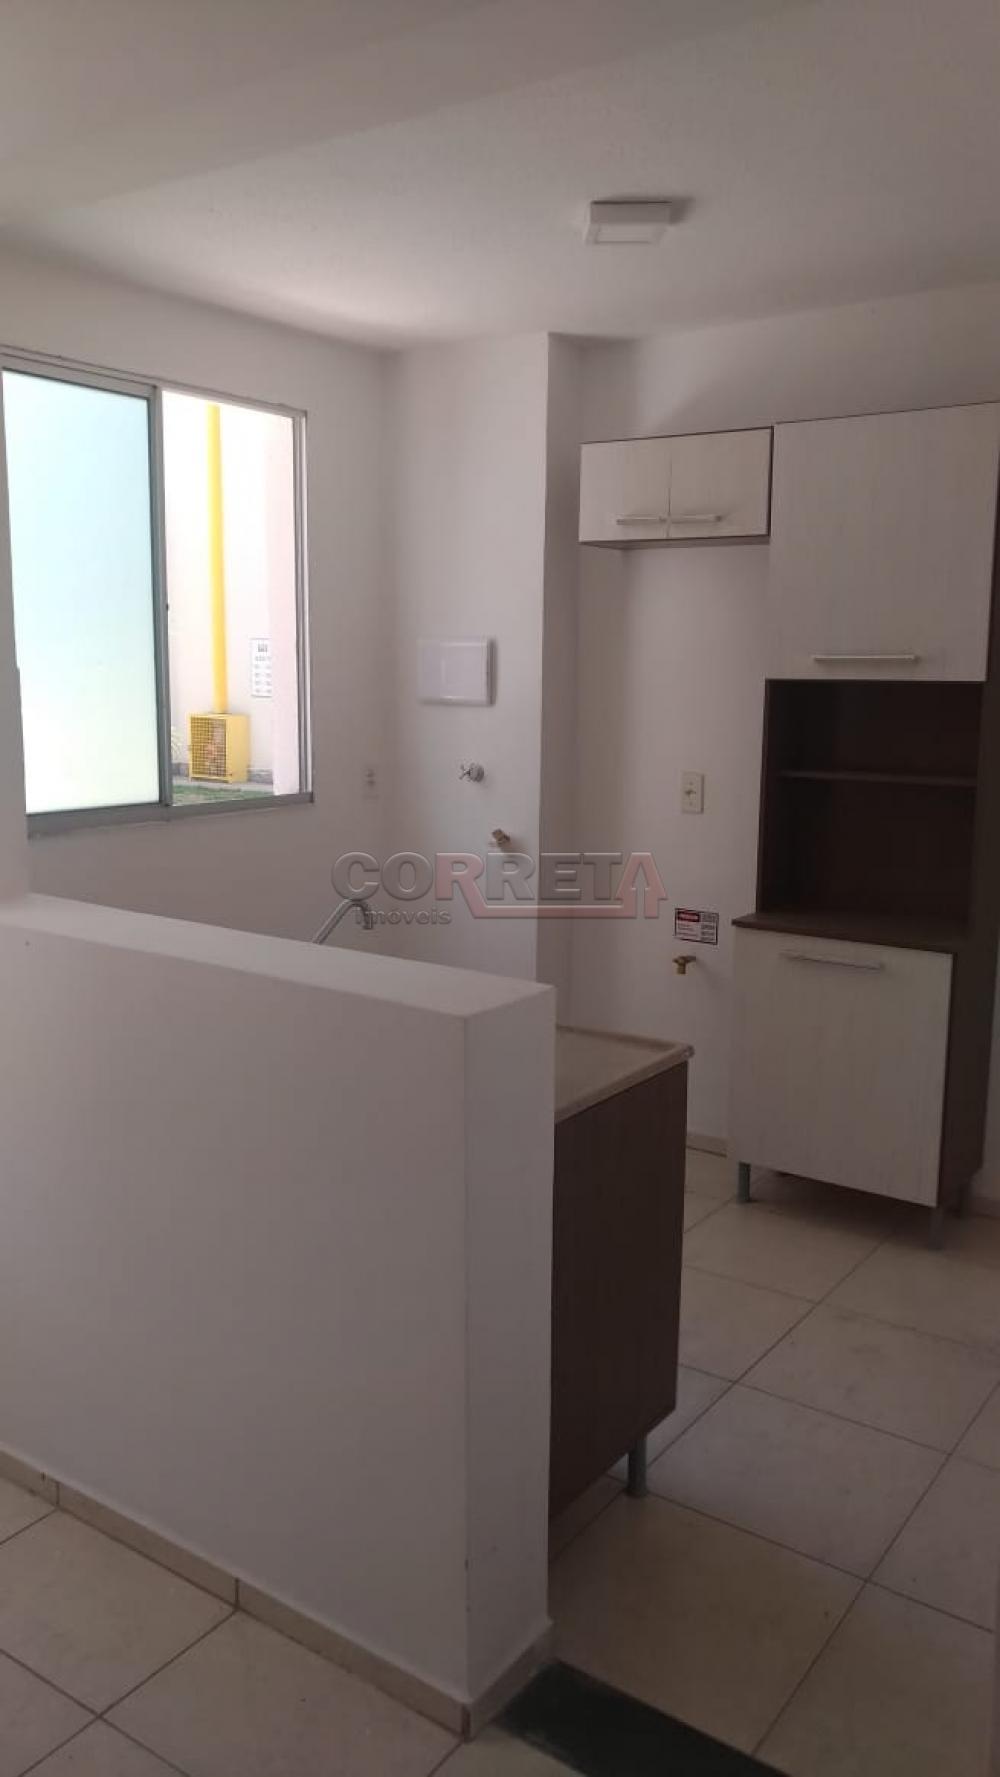 Alugar Apartamento / Padrão em Araçatuba R$ 700,00 - Foto 5